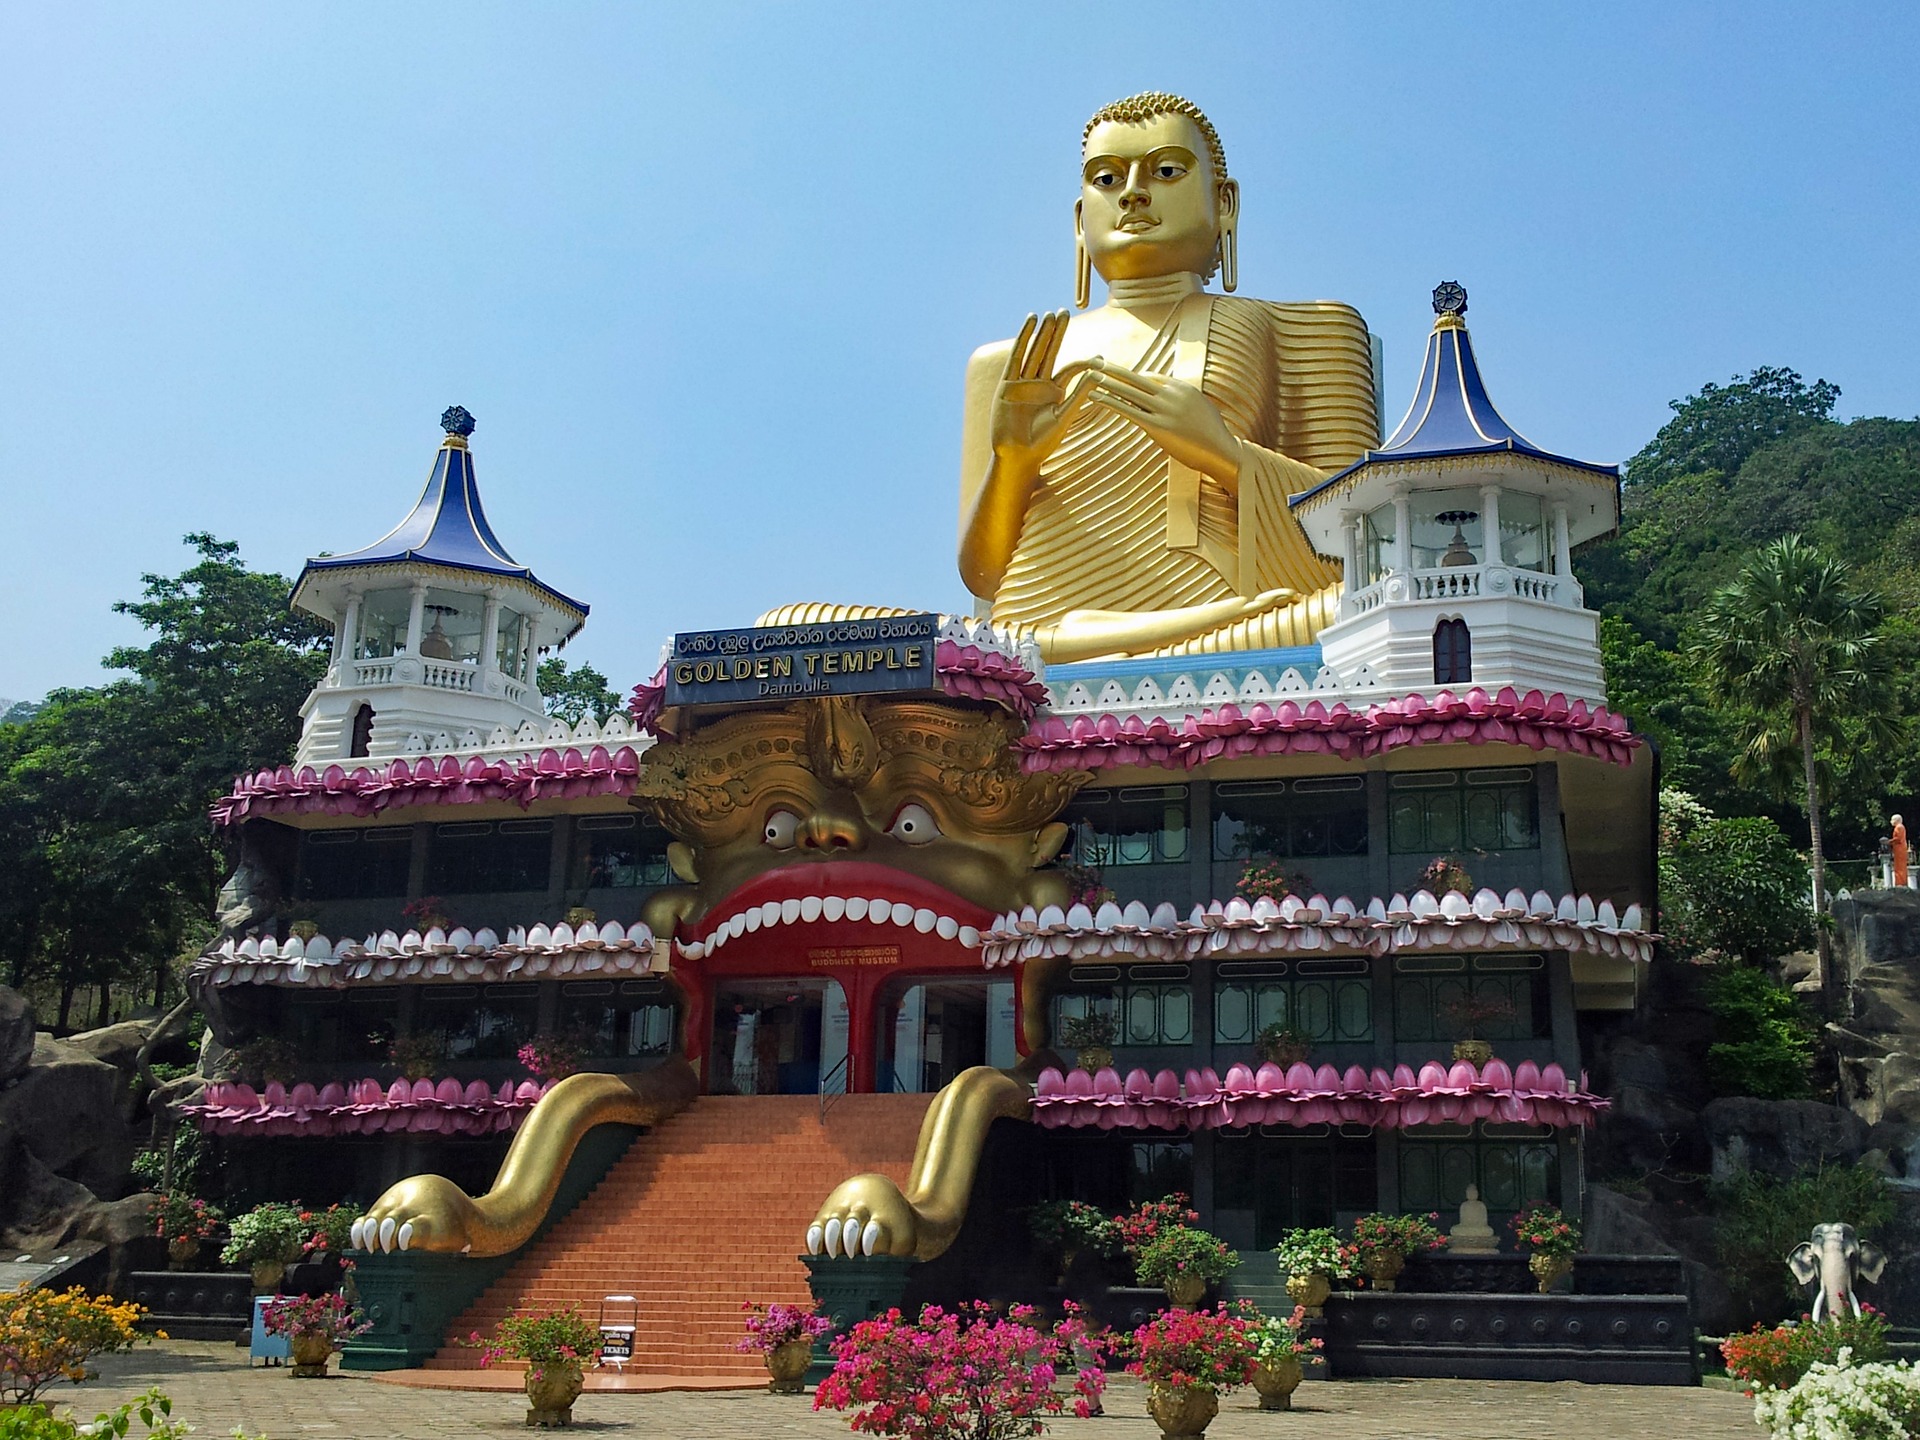 A huge golden statue of Buddha in Sigiriya, Sri Lanka.